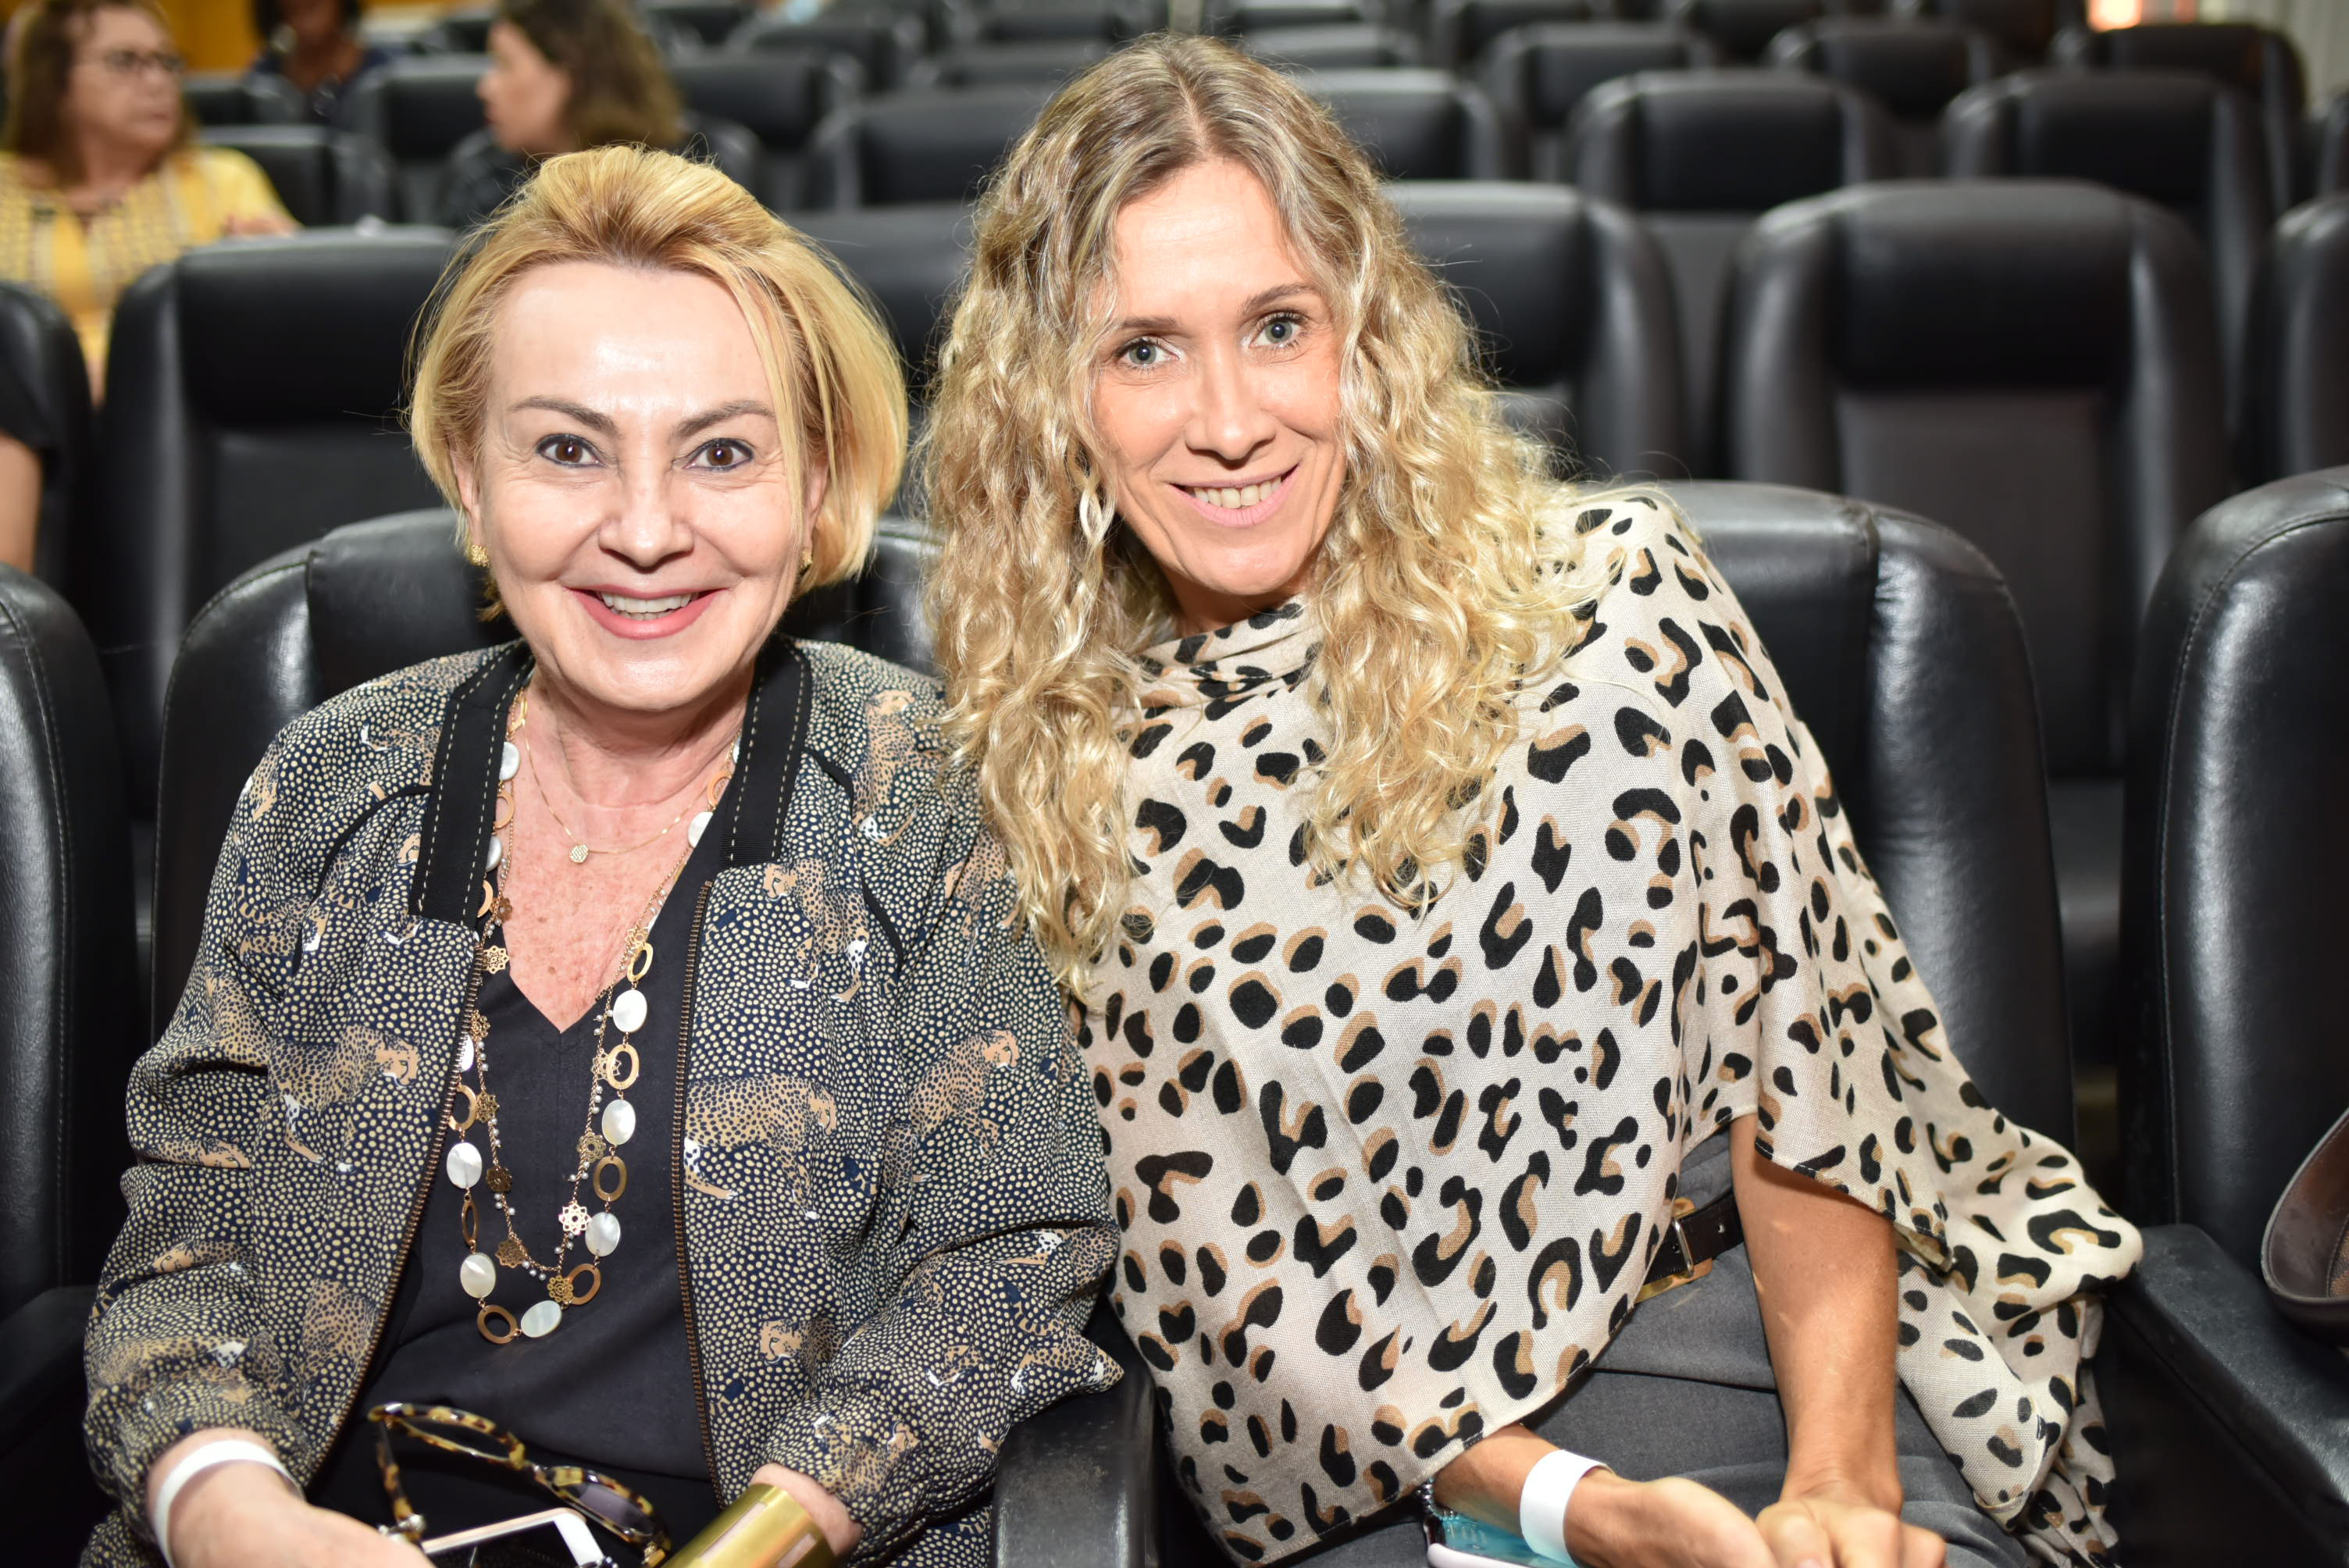 Roda de Conversa da Rede Gazeta 2020 - Dia Internacional da Mulher: Beth Dalcolmo e Ana Claudia Cardozo